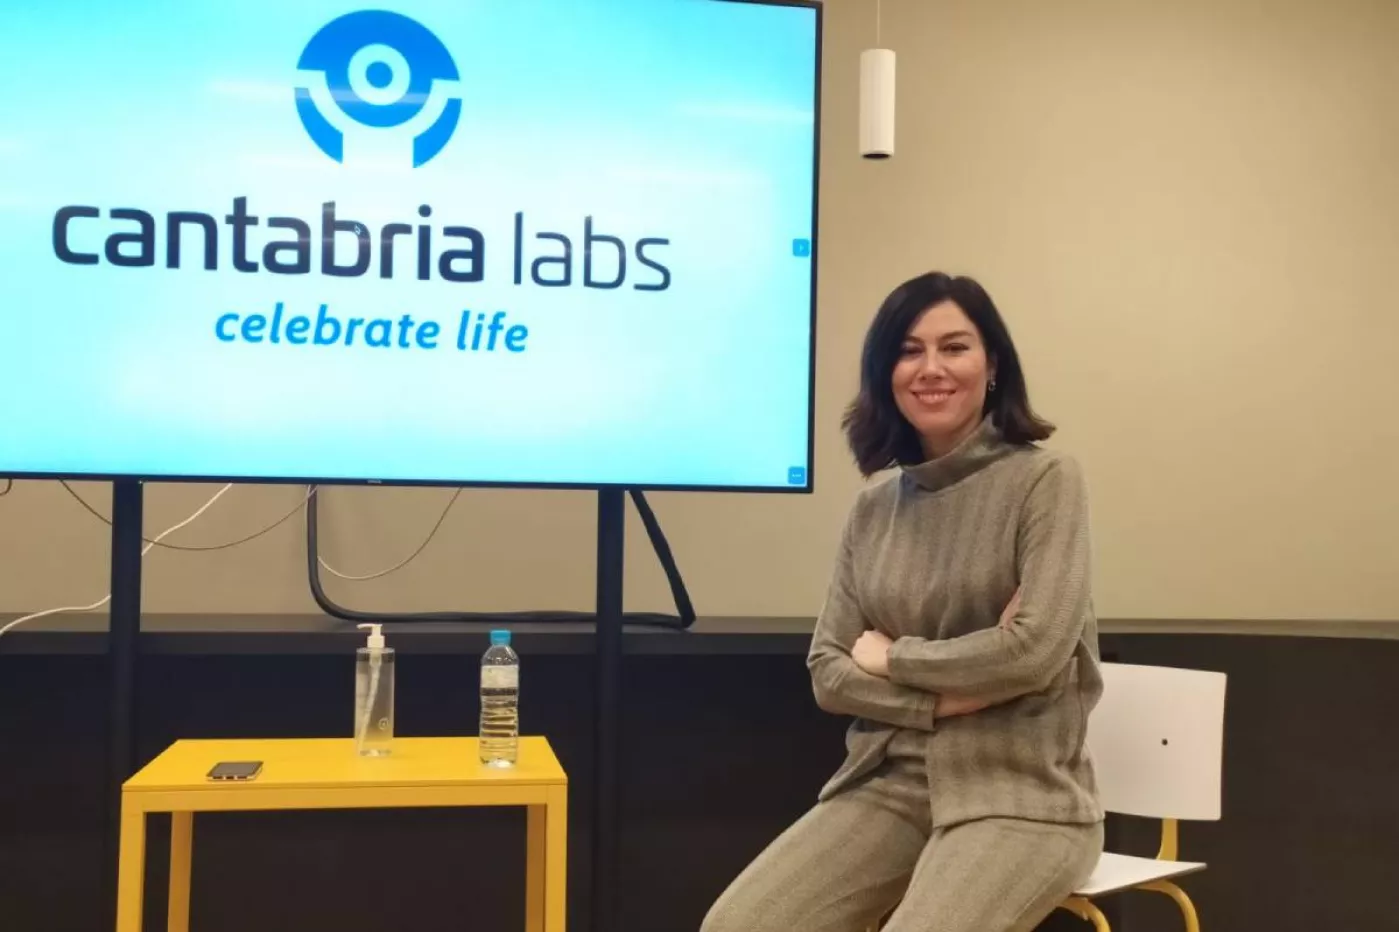 Susana Rodríguez, CEO de Cantabria Labs, afirma que su compañía es una empresa de "bata blanca", porque se enfoca al médico, al farmacéutico y al veterinario.